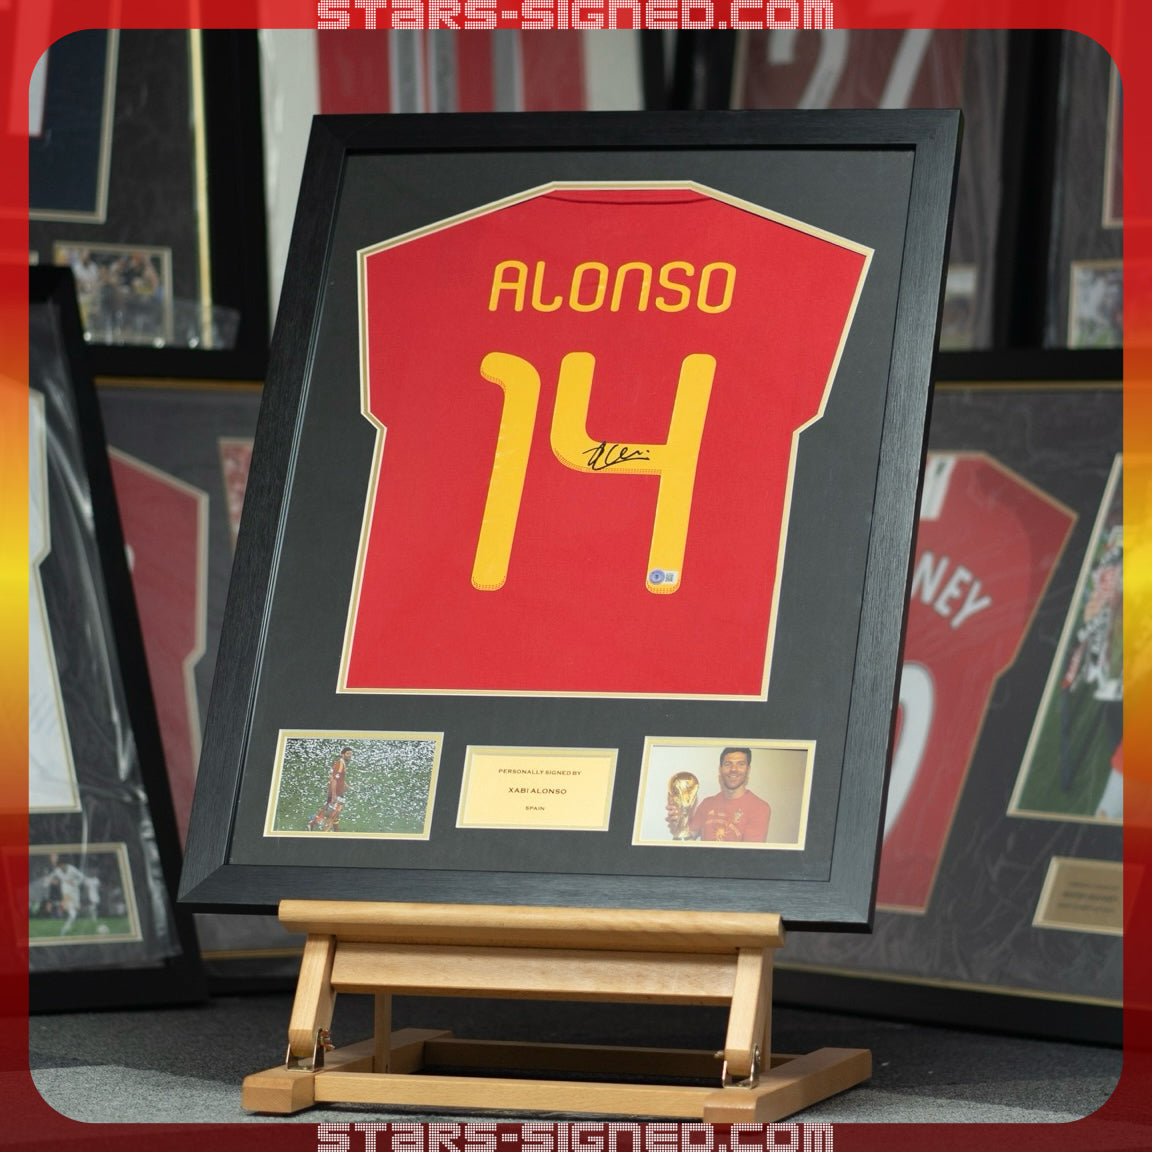 沙比•阿朗素 Xabi Alonso 西班牙主場球衣裱框(背簽)